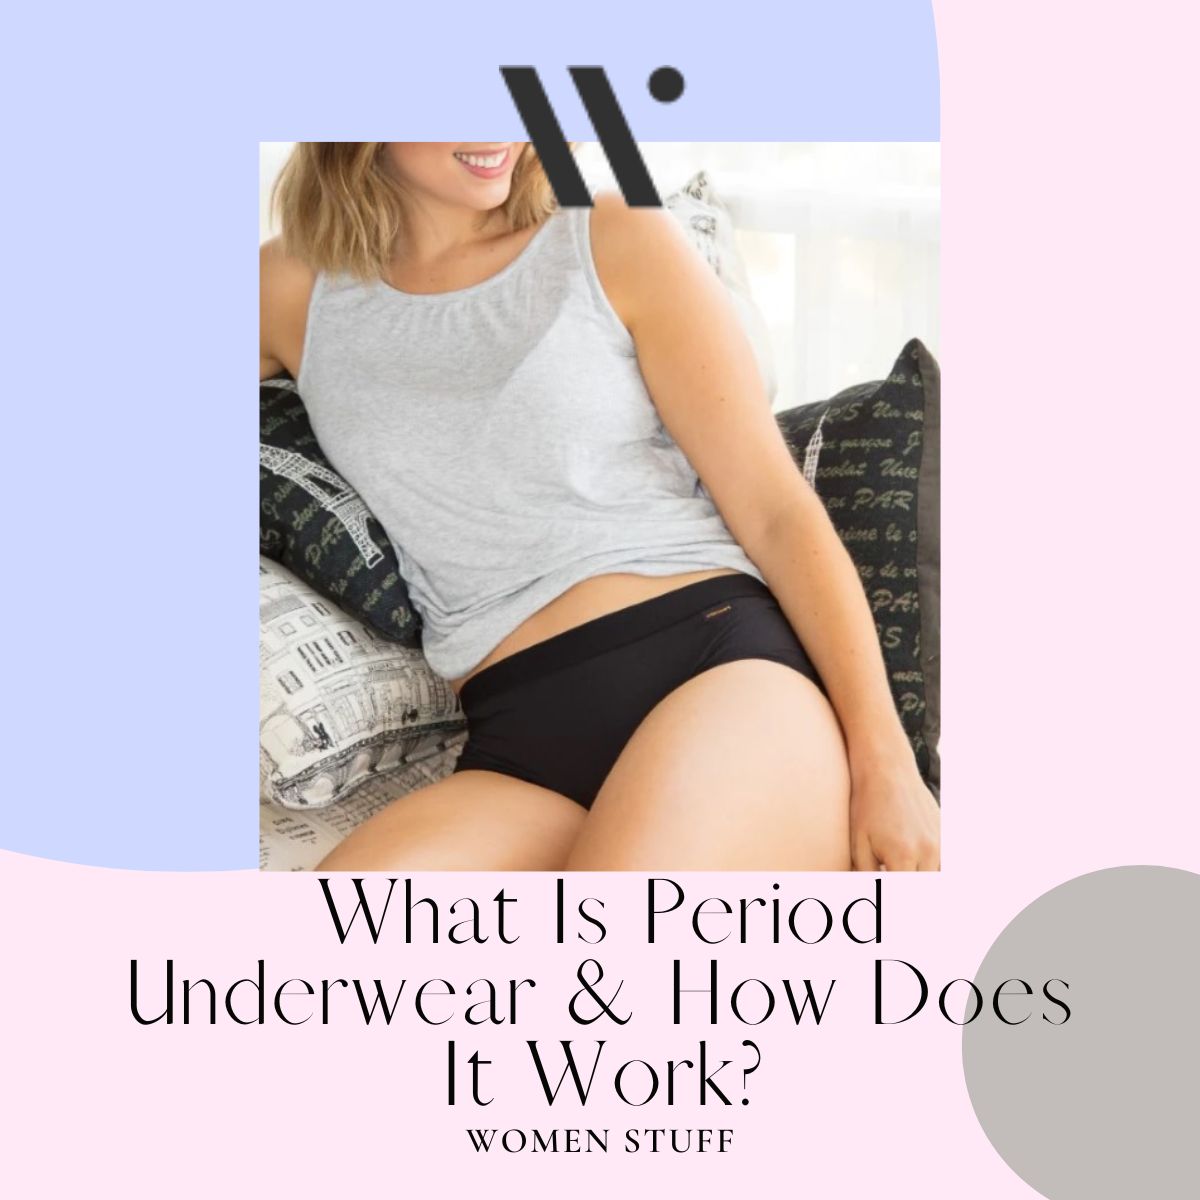 Period underwear - how does it work?